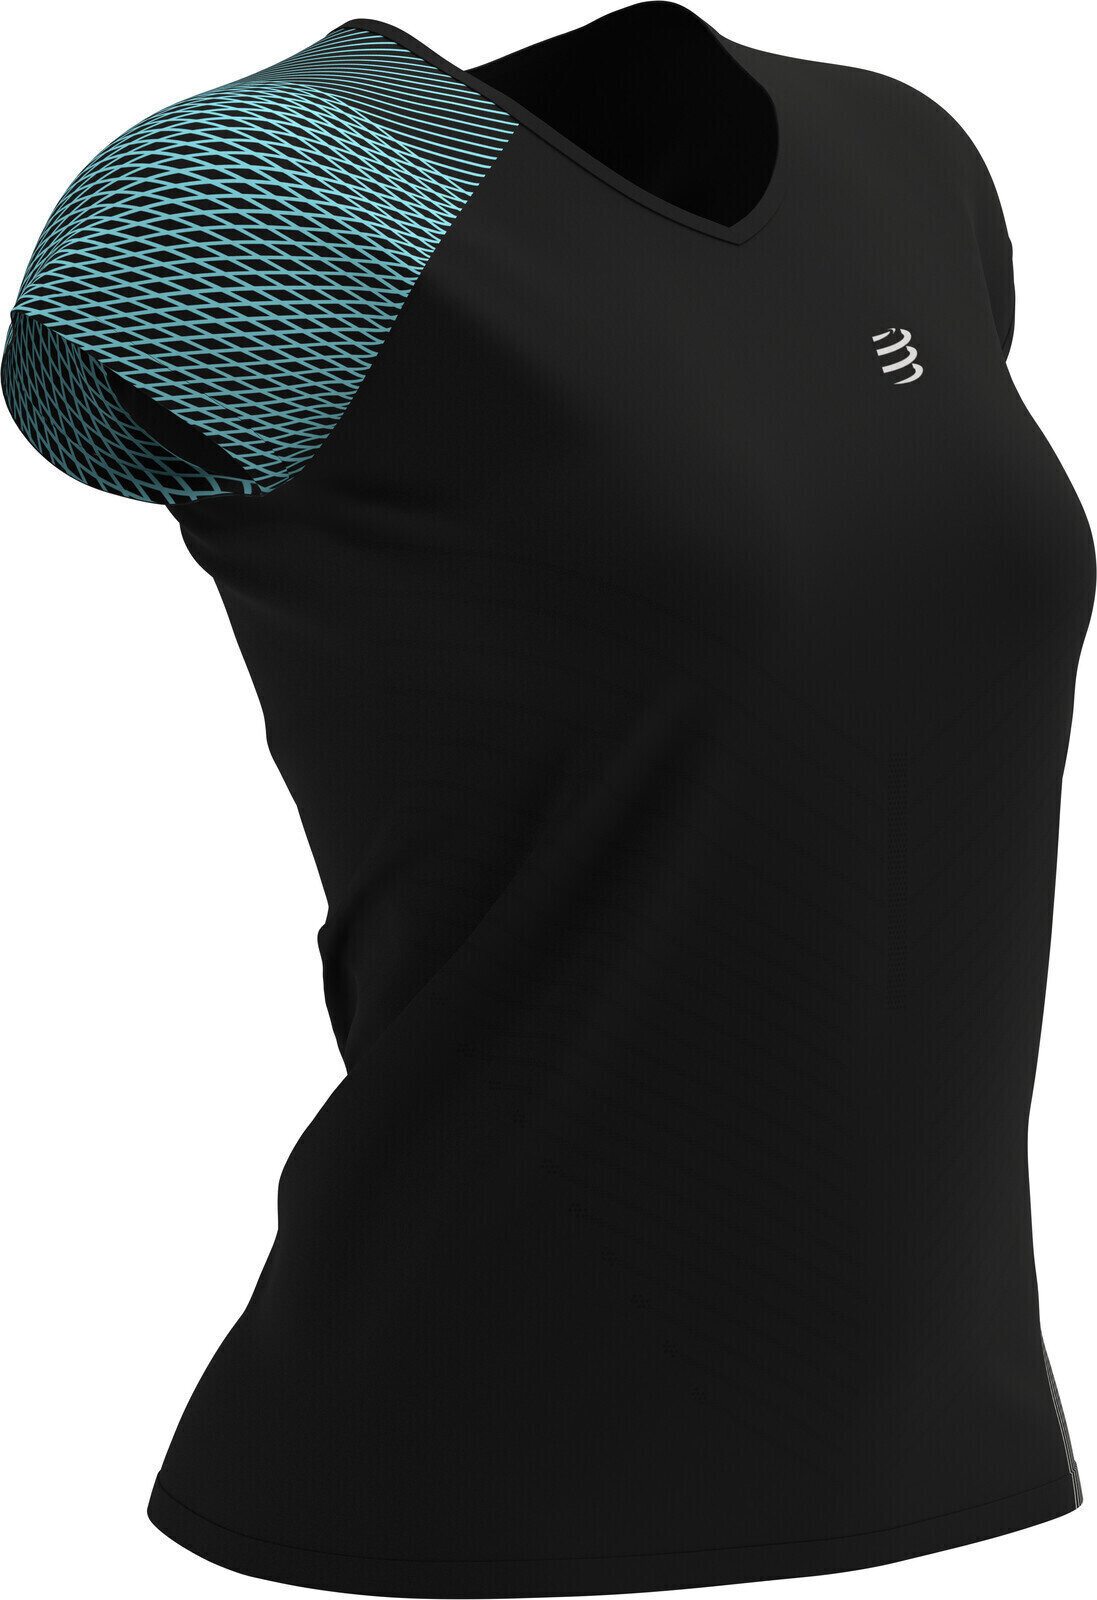 Chemise de course à manches courtes
 Compressport Performance T-Shirt Black L Chemise de course à manches courtes